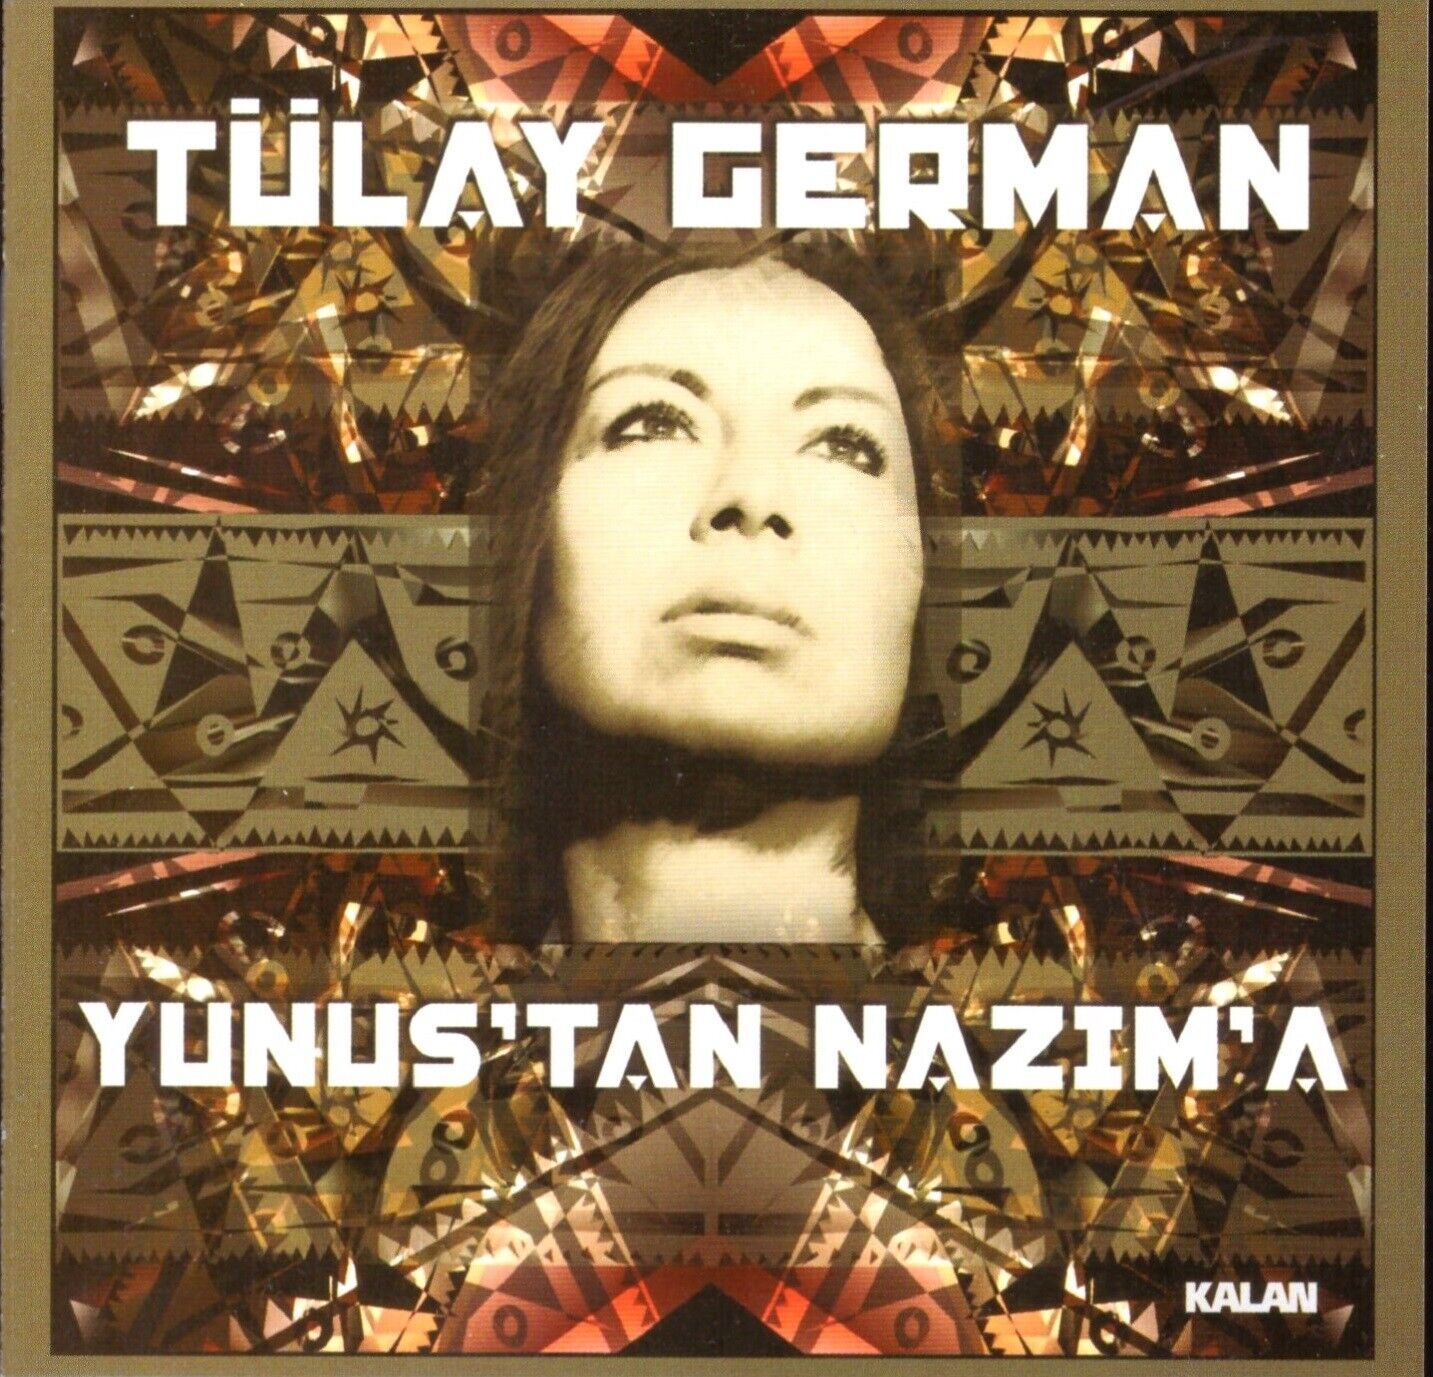 Tülay German – Yunus'tan Nazım'a CD Turkish Music "New"